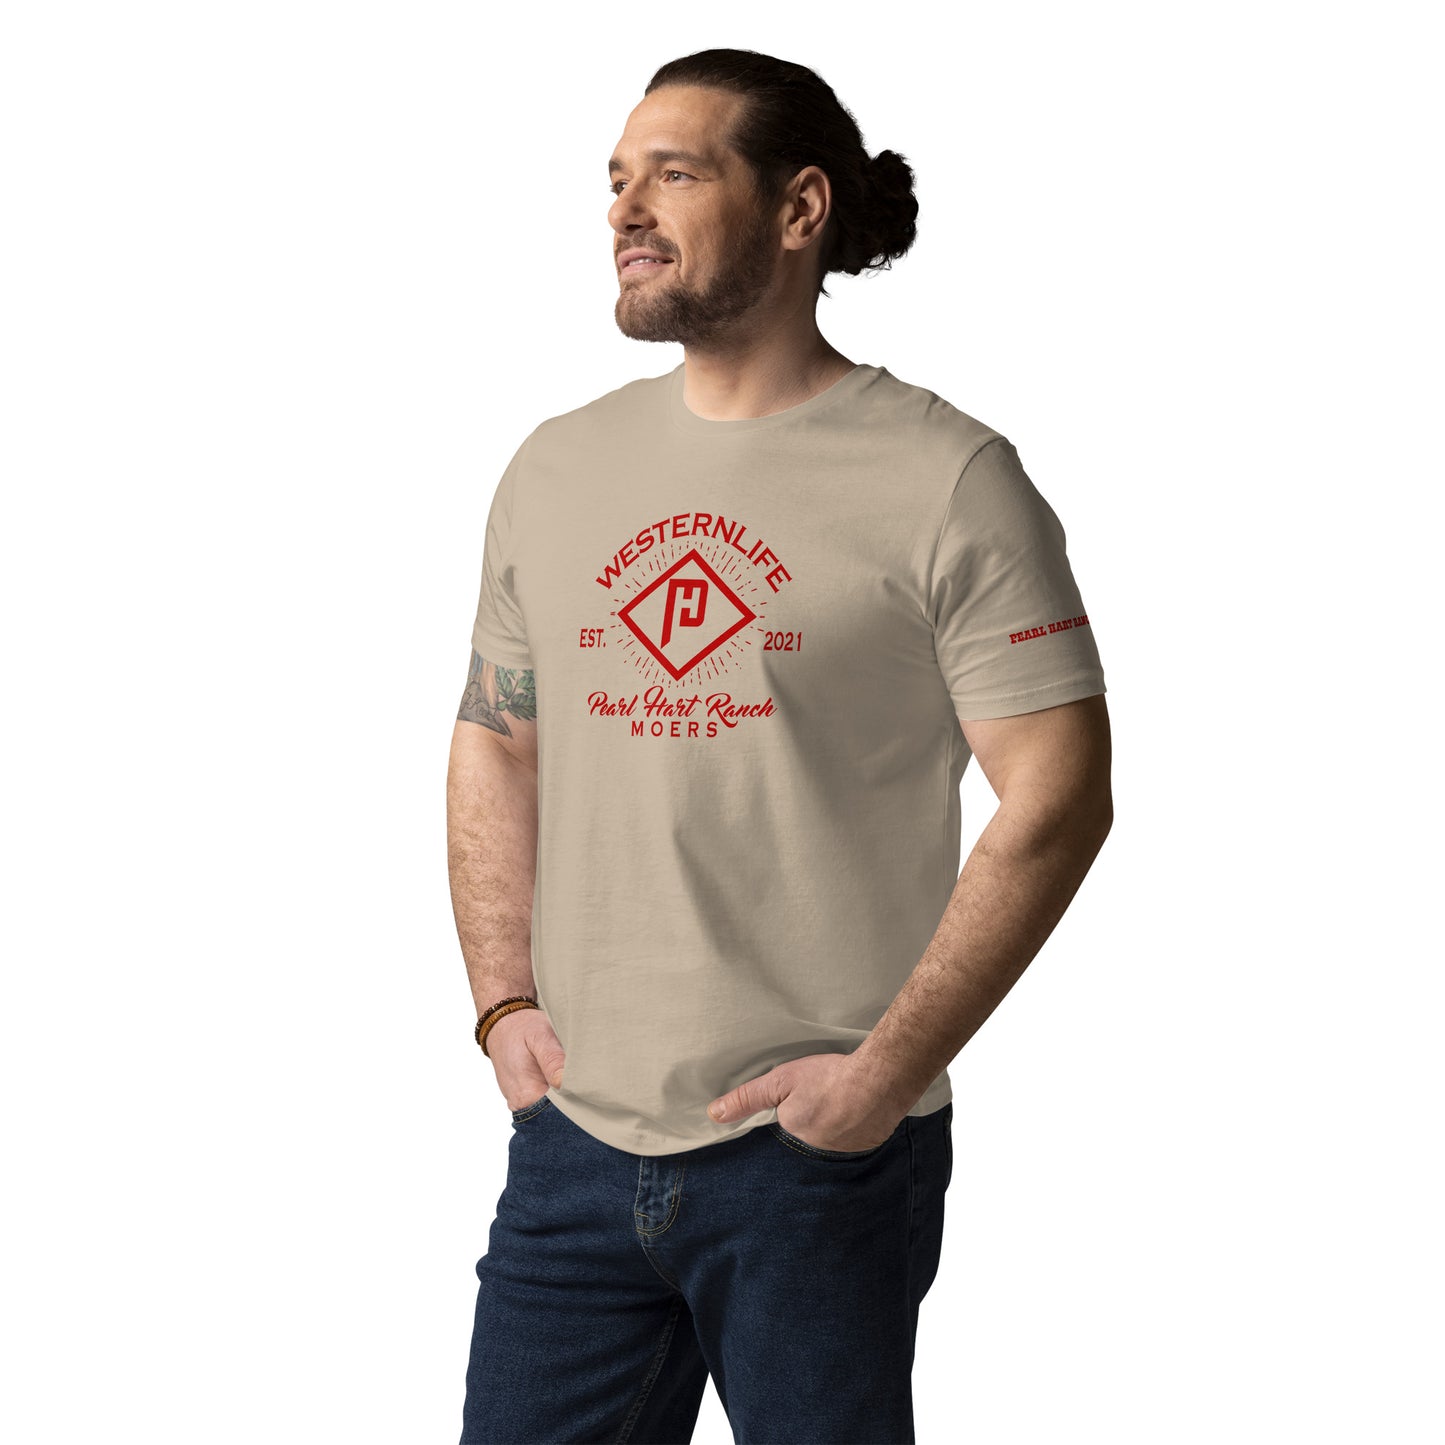 Pearl Hart Ranch Unisex-Bio-Baumwoll-T-Shirt versch. Farben „Brand“